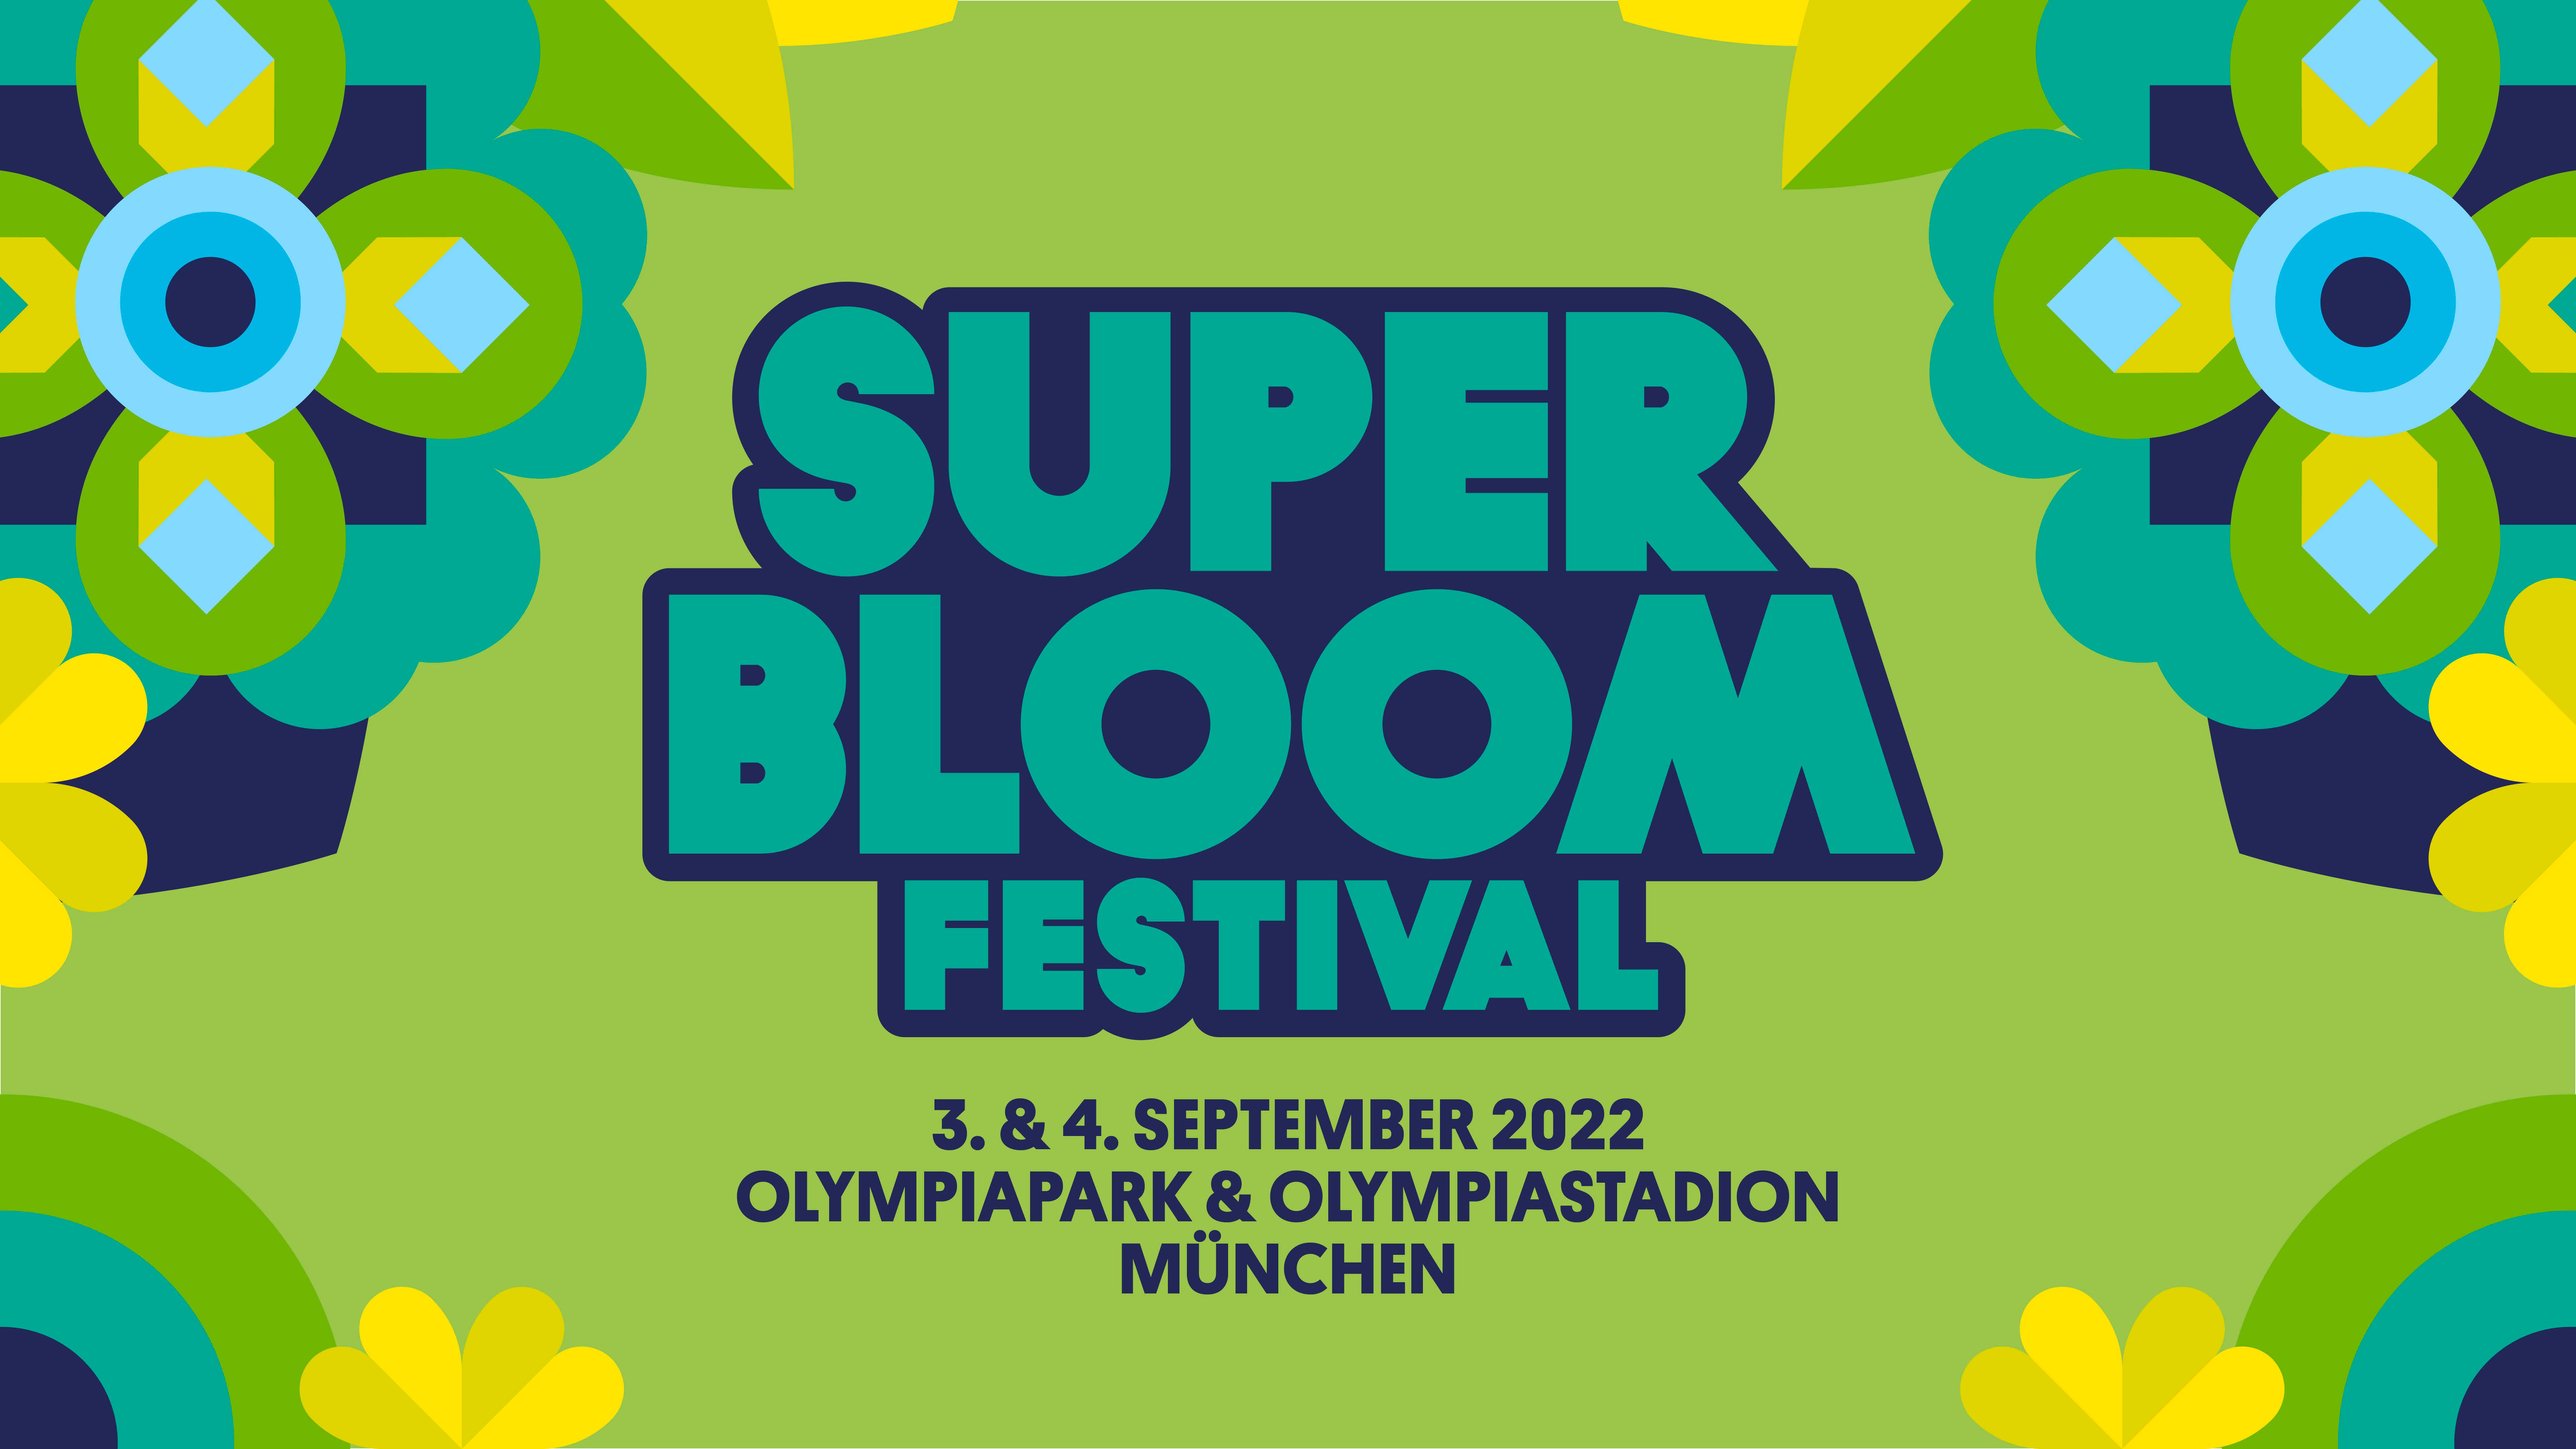 Das MegaFestival mit BAYERN 3 SUPERBLOOM 2022 in München u.a. mit